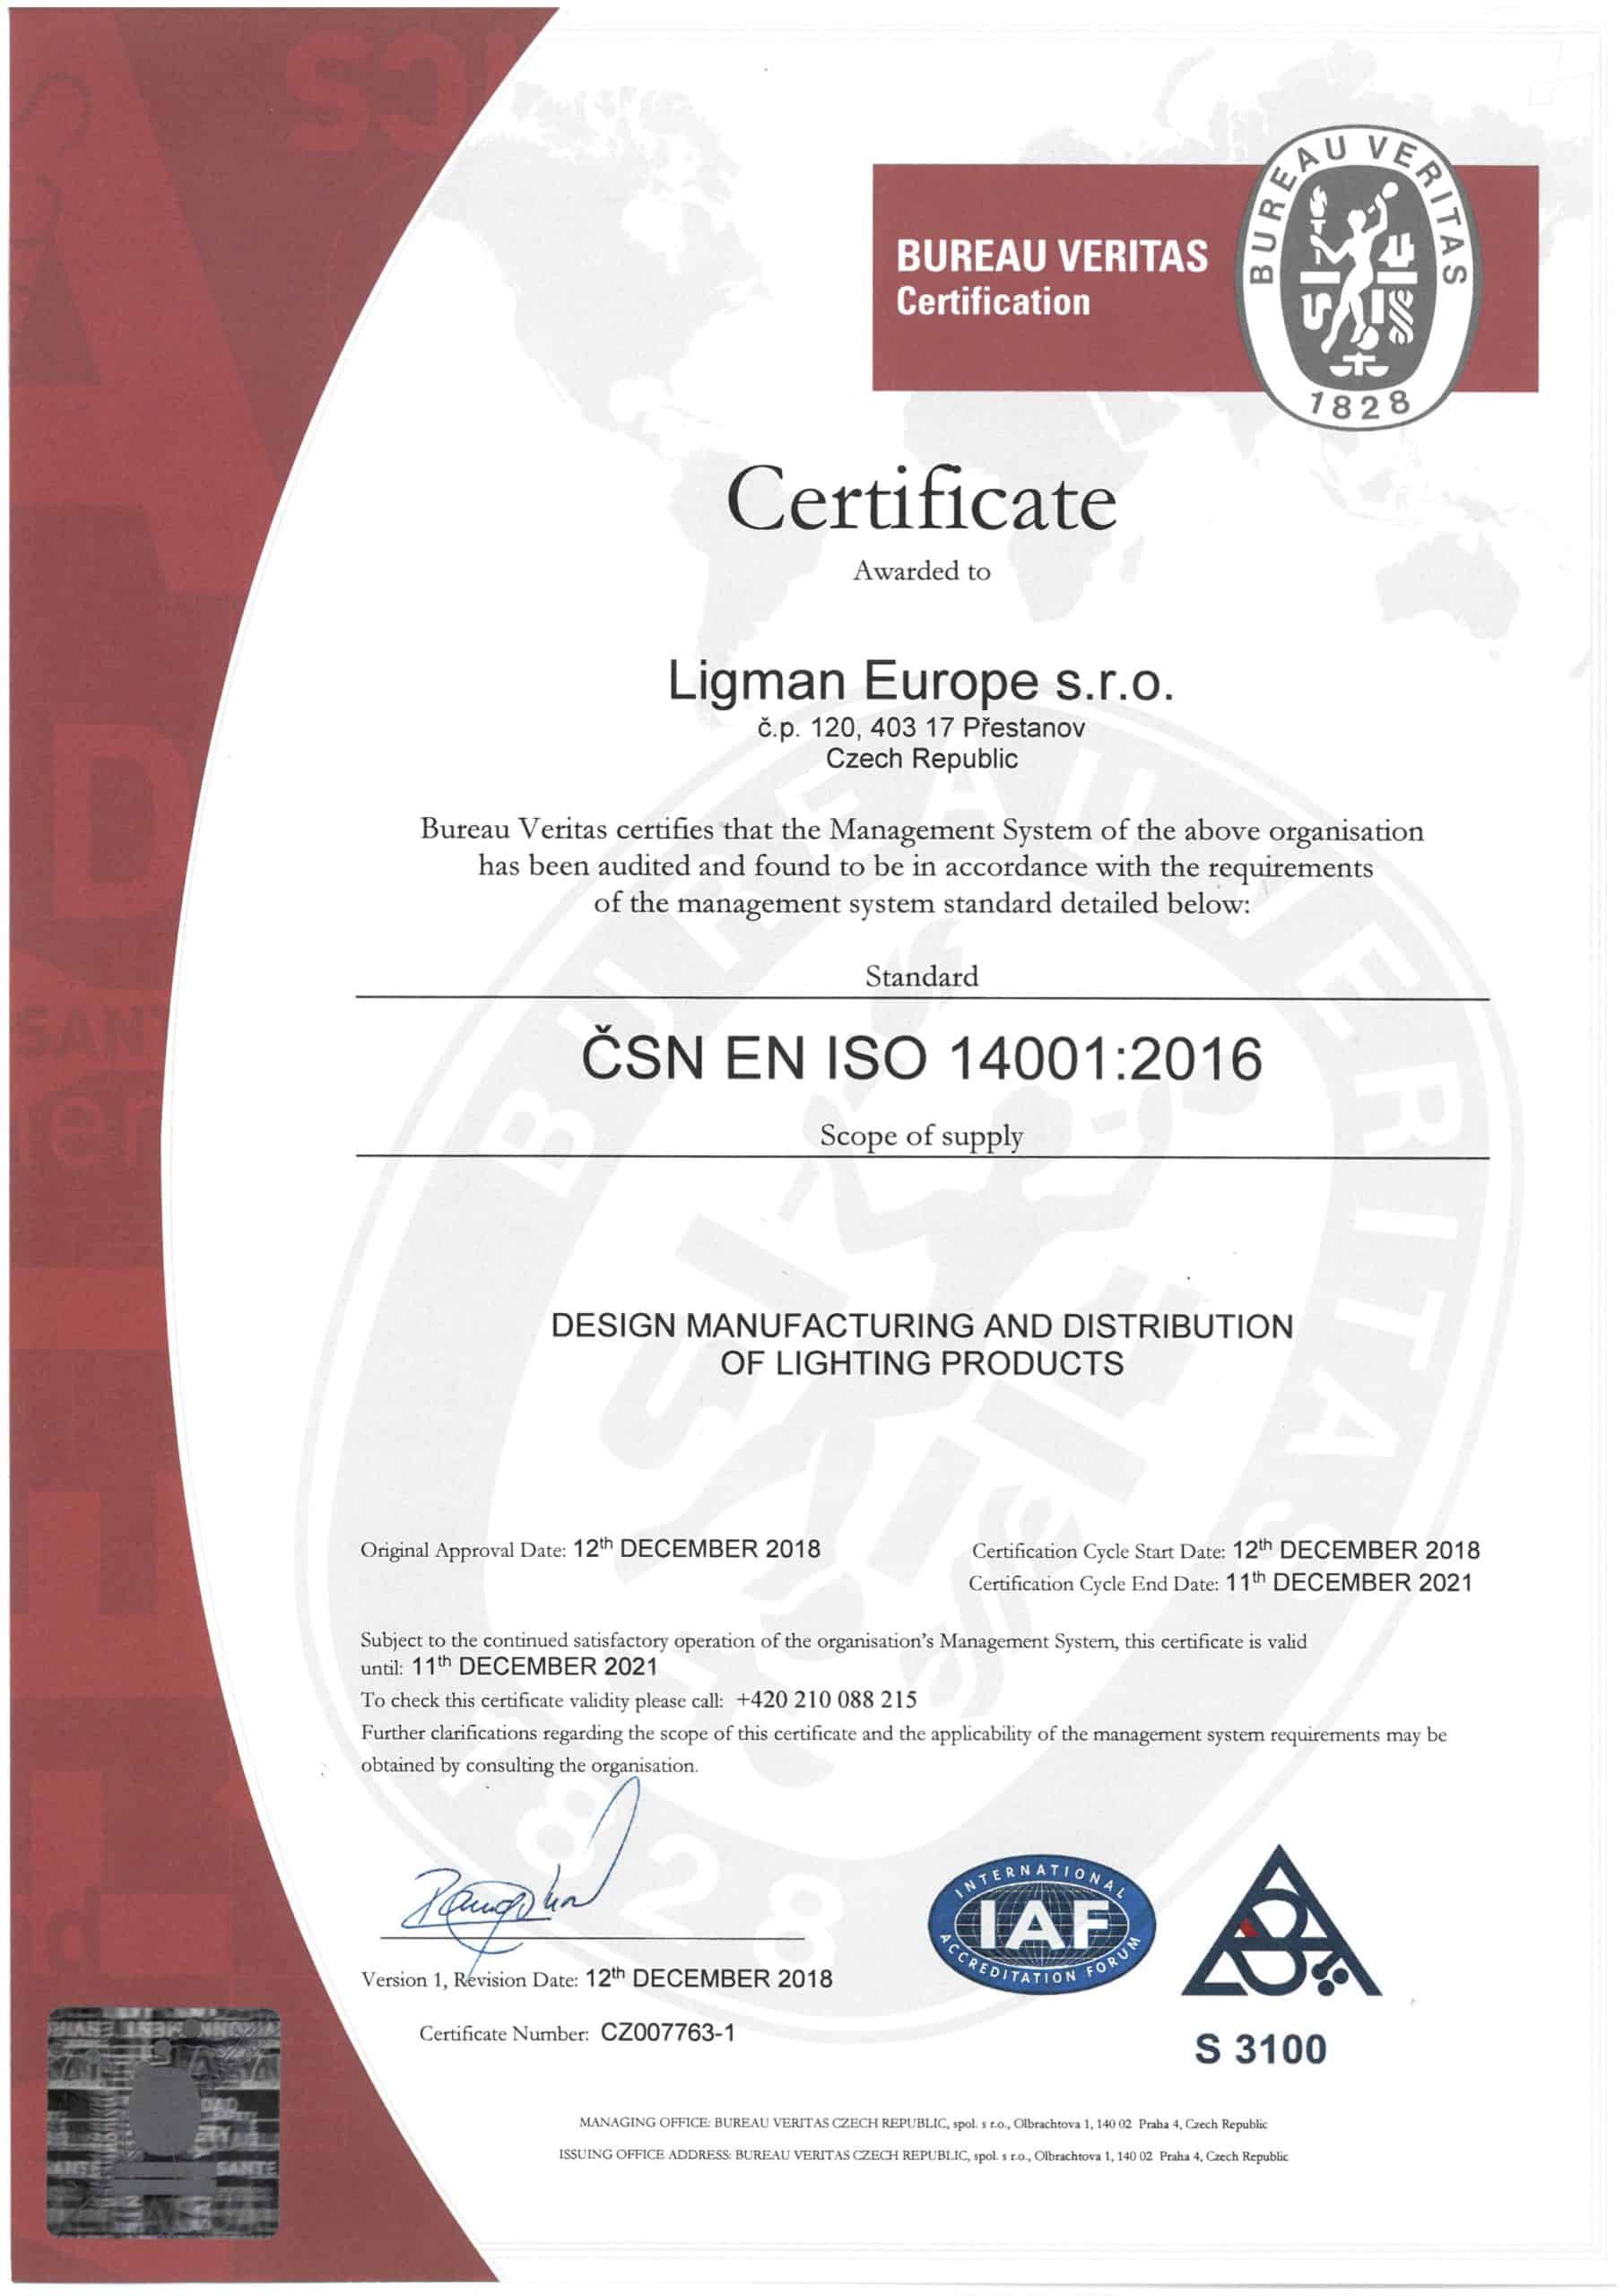 LLEU - ISO 14001